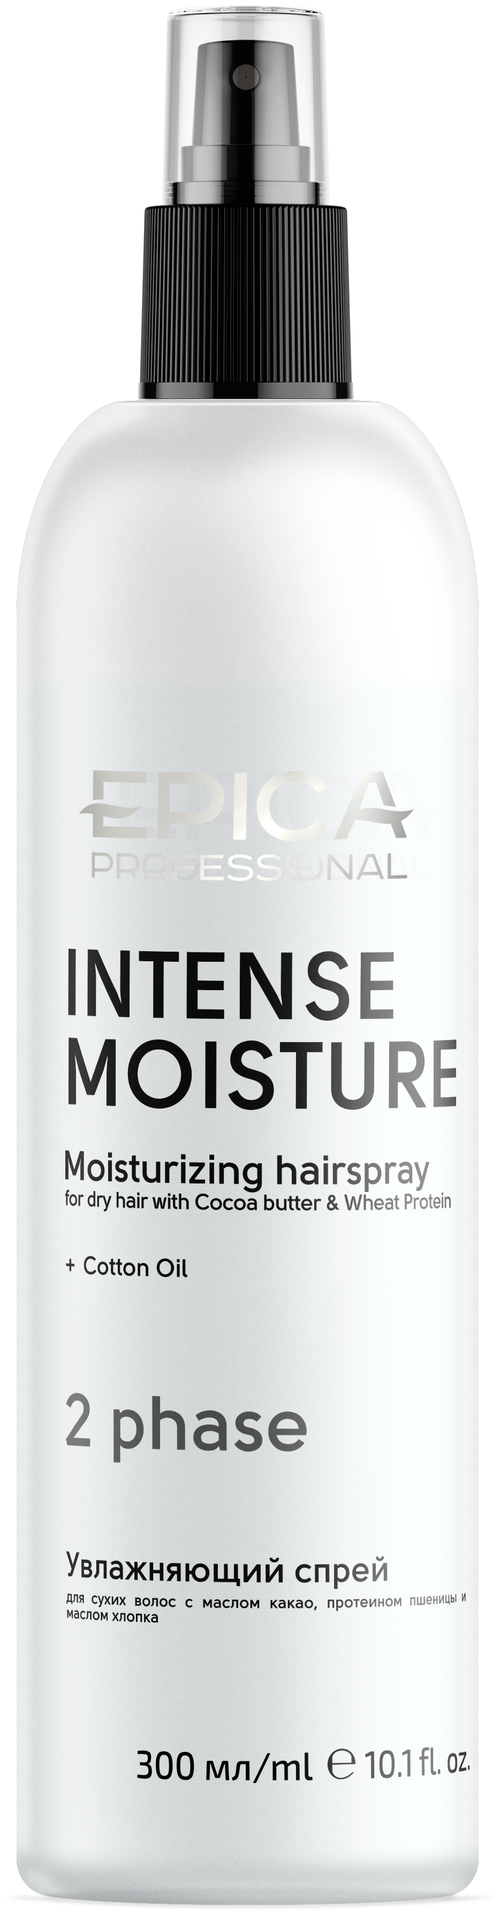 EPICA Professional Intense Moisture Двухфазный увлажняющий спрей для сухих волос c маслом какао и экстрактом зародышей пшеницы, 300 мл.